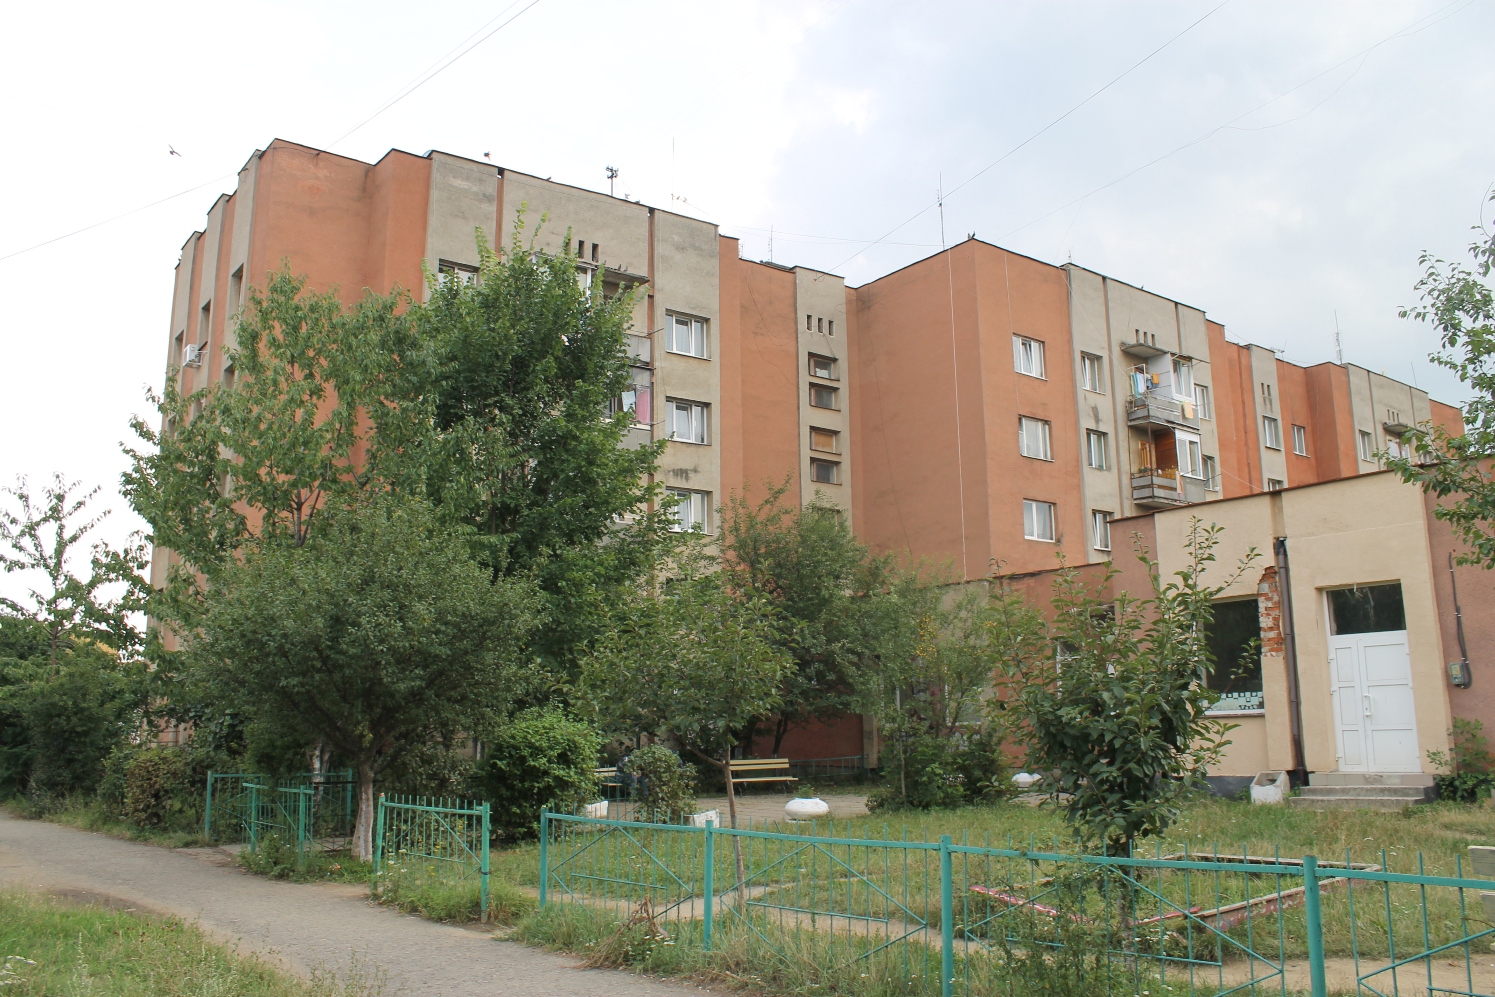 Гуртожиток на Богомольця в Ужгороді став повноцінним житловим будинком